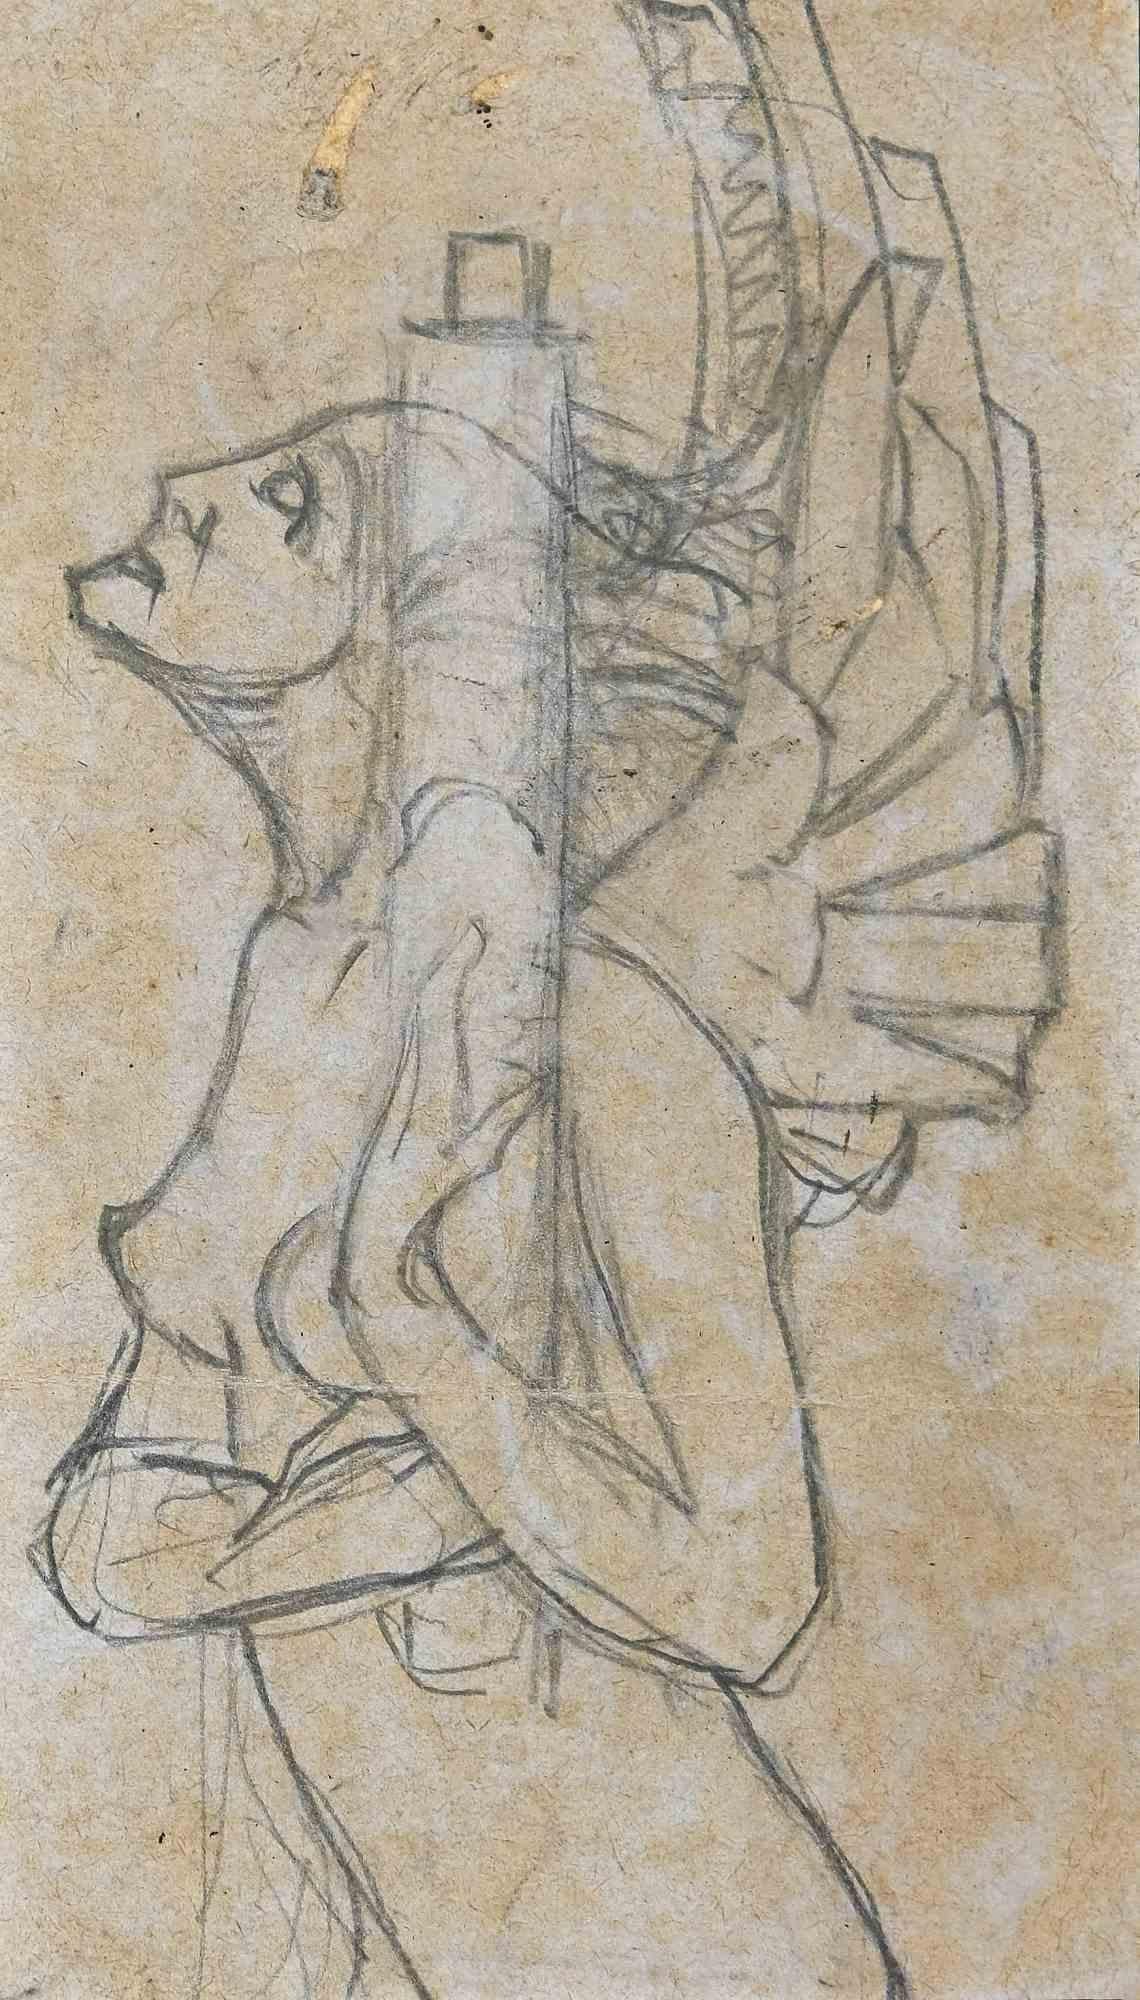 Dancer - Original Pencil Drawing - 1920